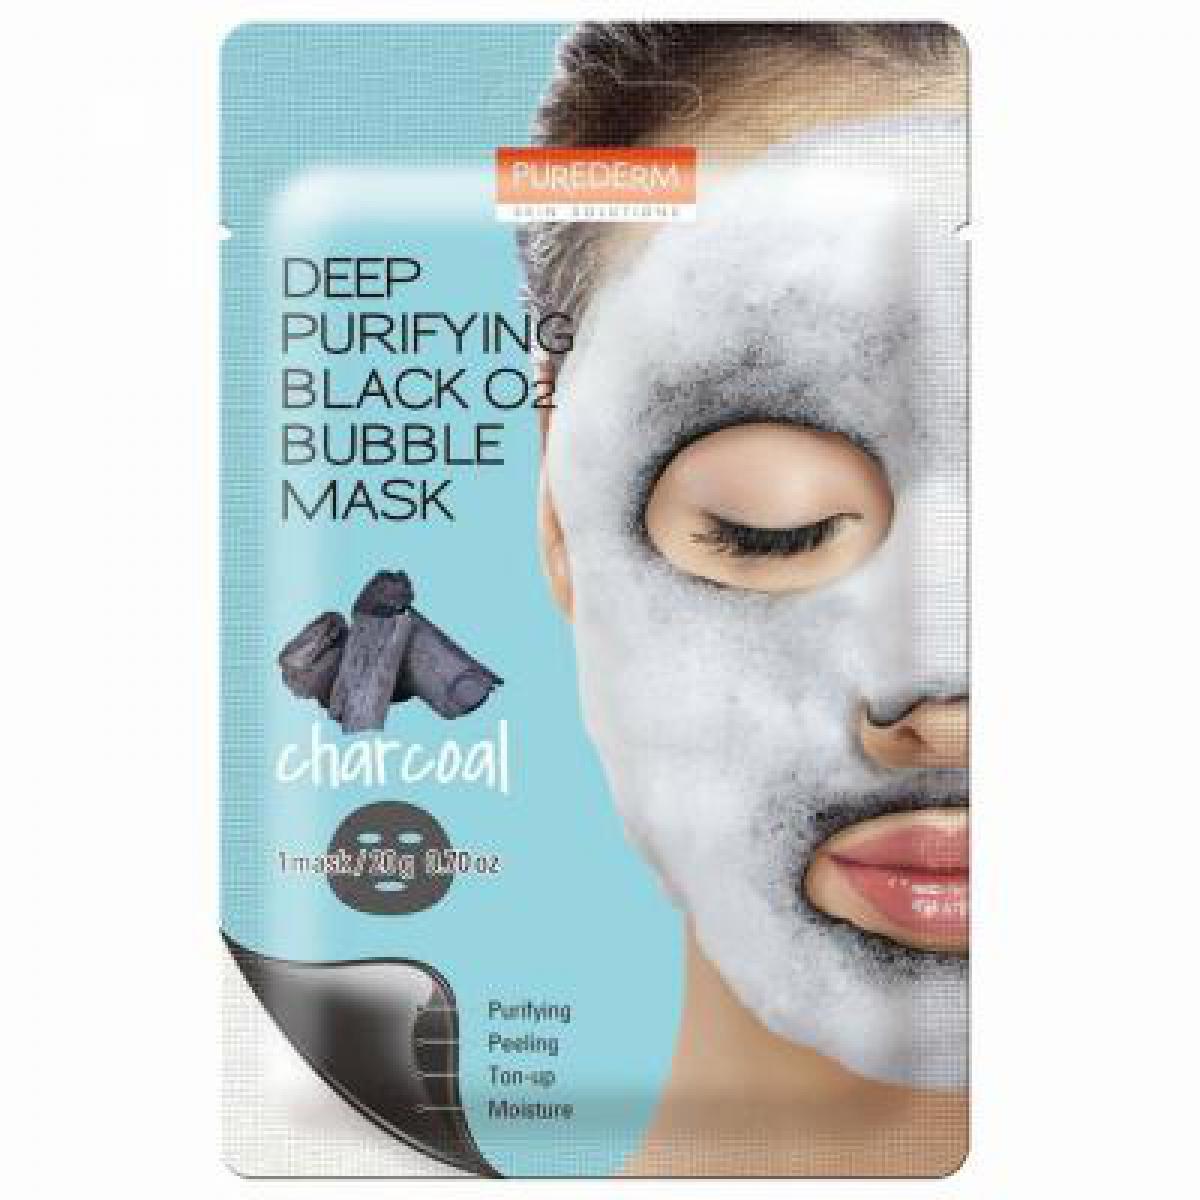 ماسک نقابی حبابی پاک کننده عمیق زغال - Deep purifying black o2 bubble mask